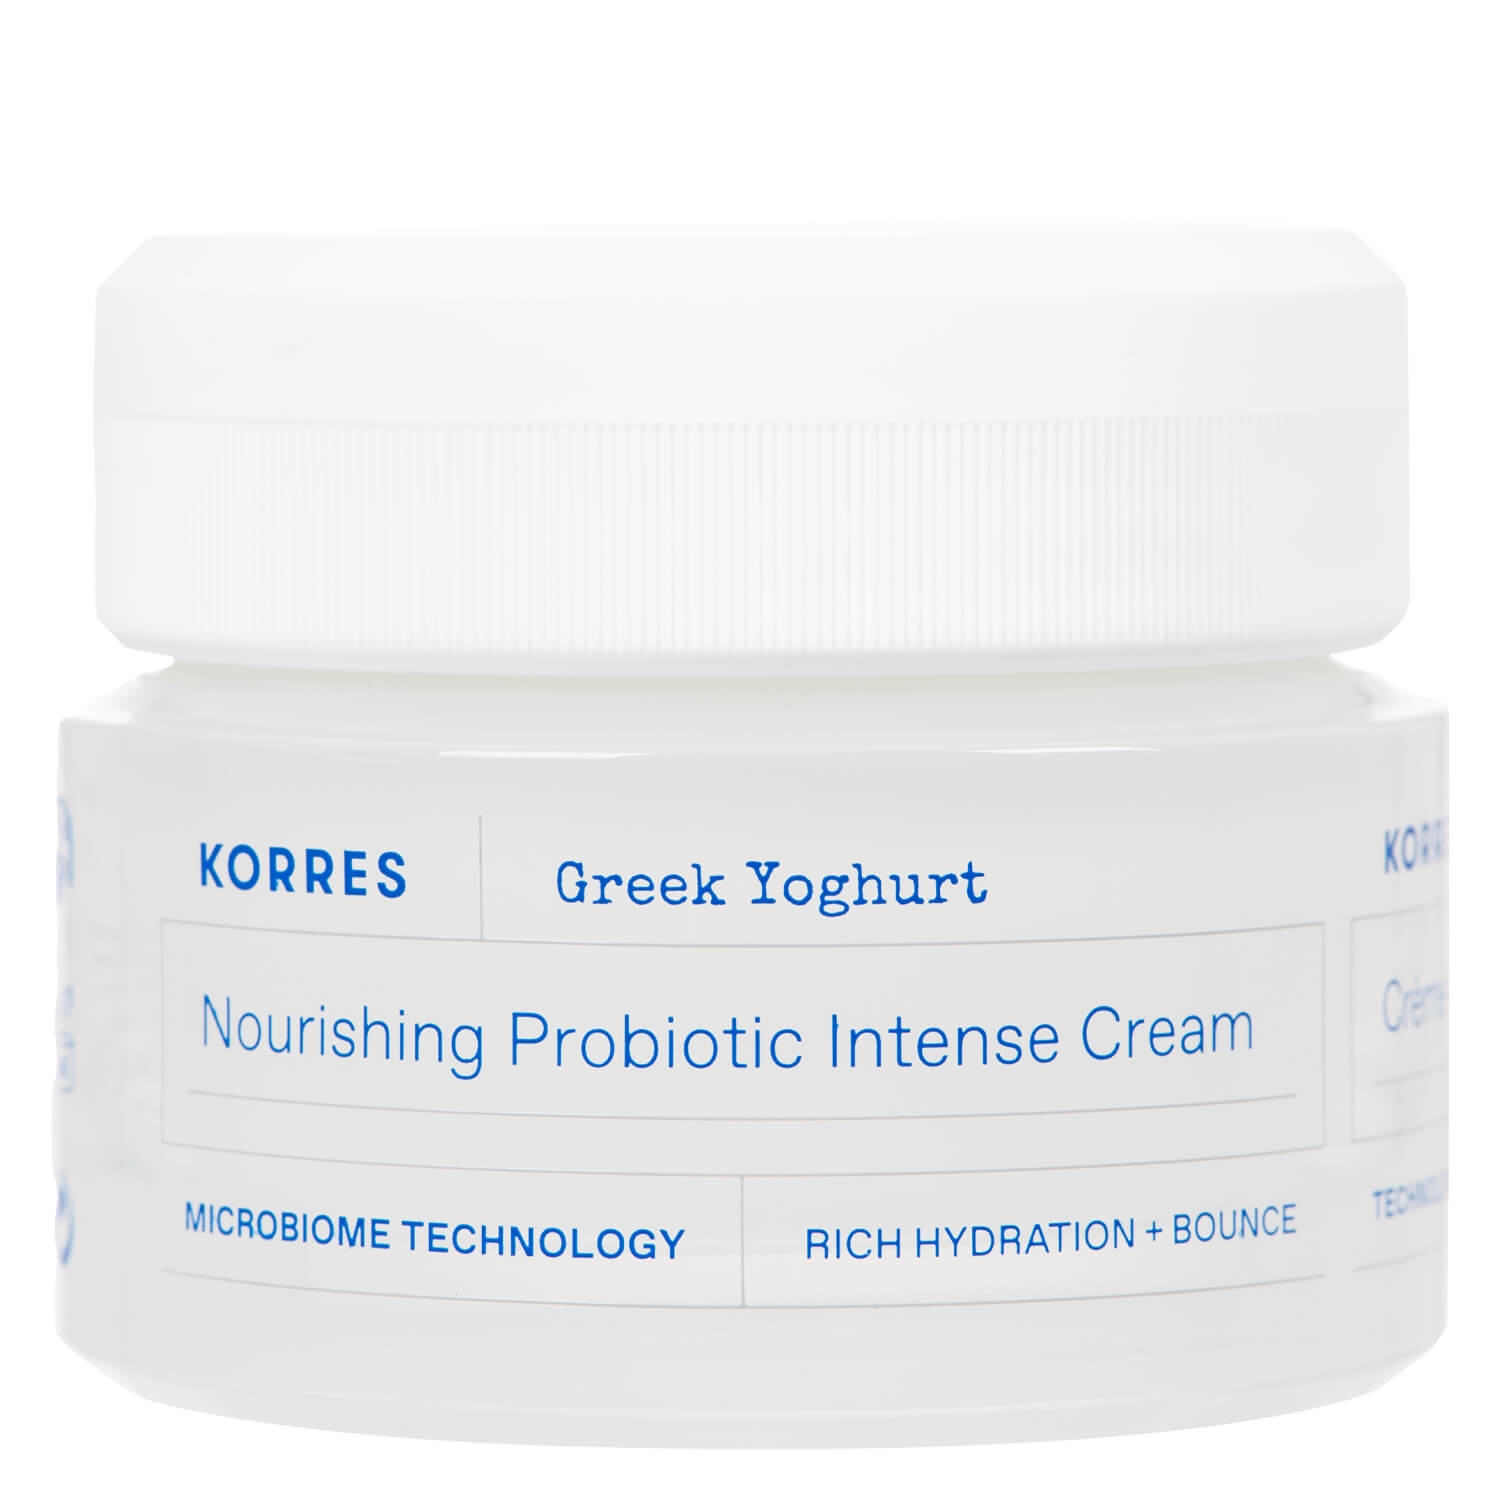 Produktbild von Greek Yoghurt Nourishing Probiotic Intense Cream